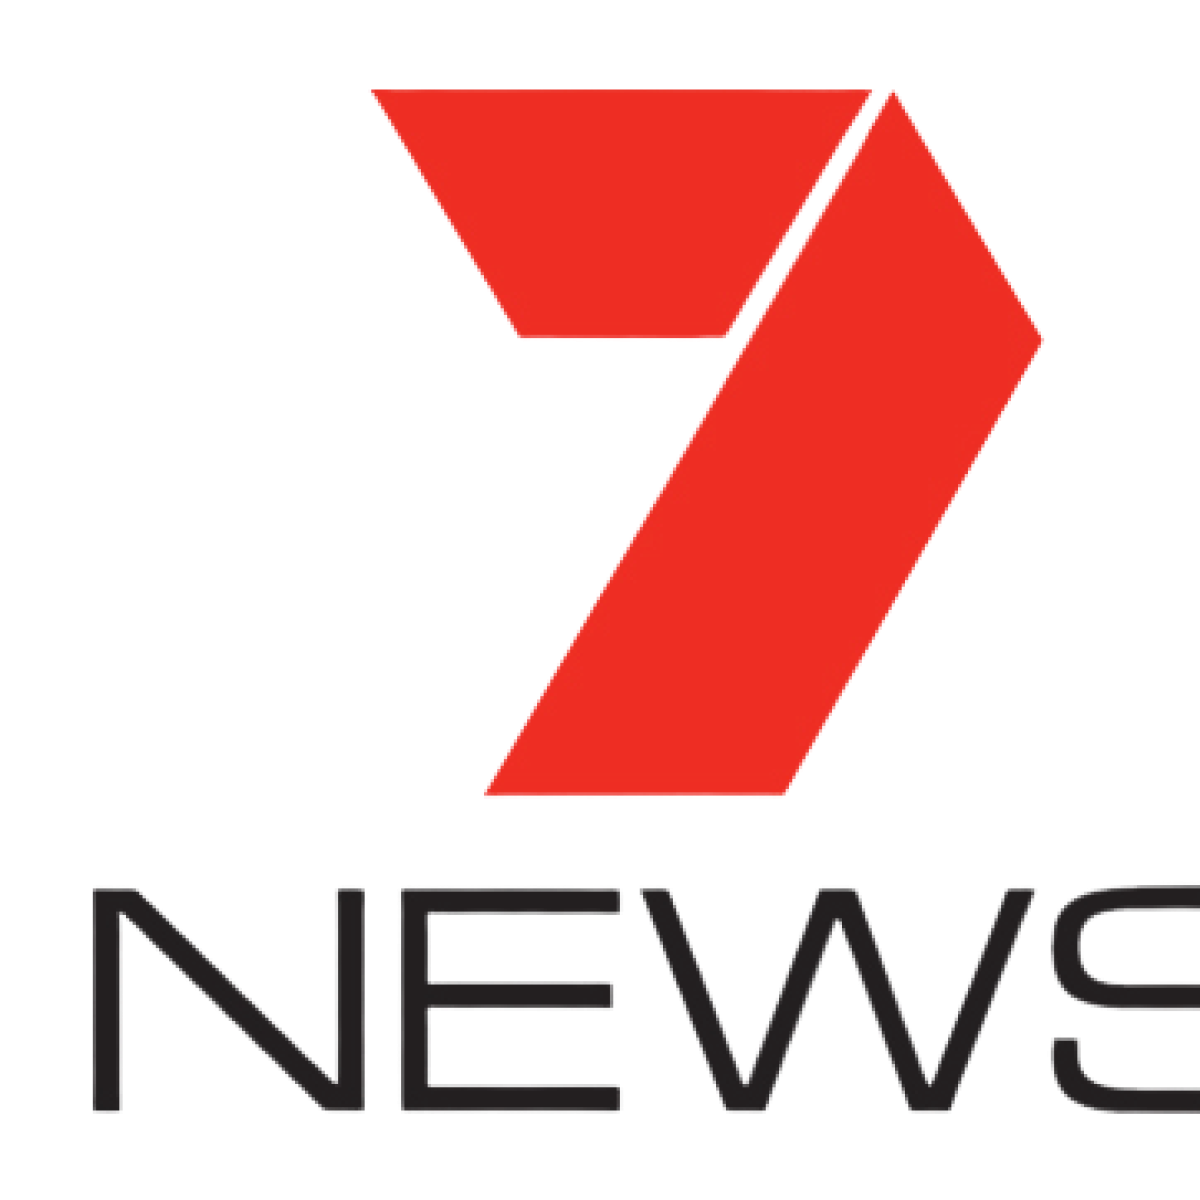 7News.com.au Logo / 7news Australia Vietnam S Coronavirus Success ...